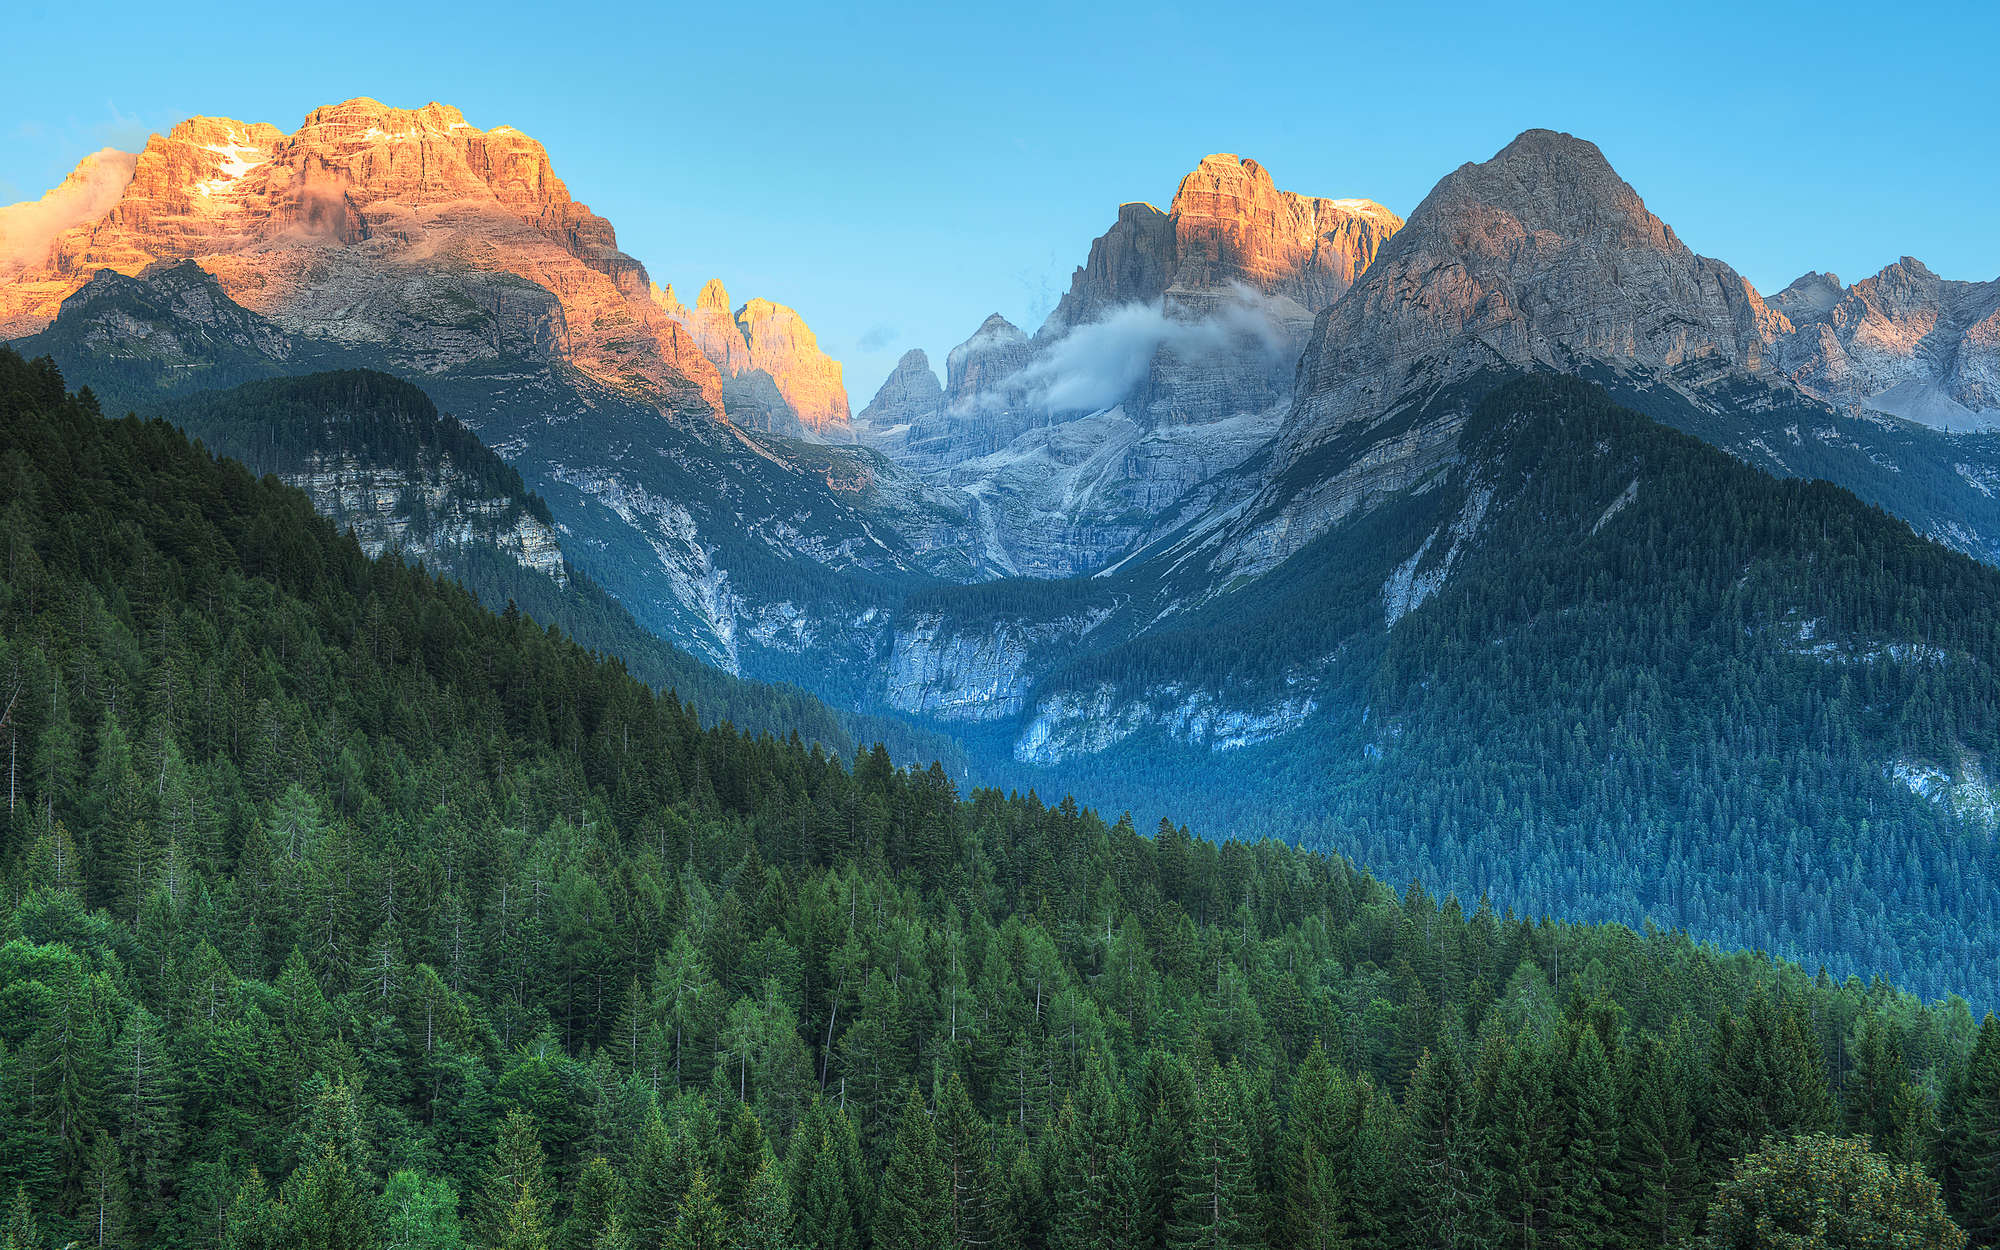             Fotomurali Dolomites Mountains in Italy - tessuto non tessuto liscio madreperlato
        